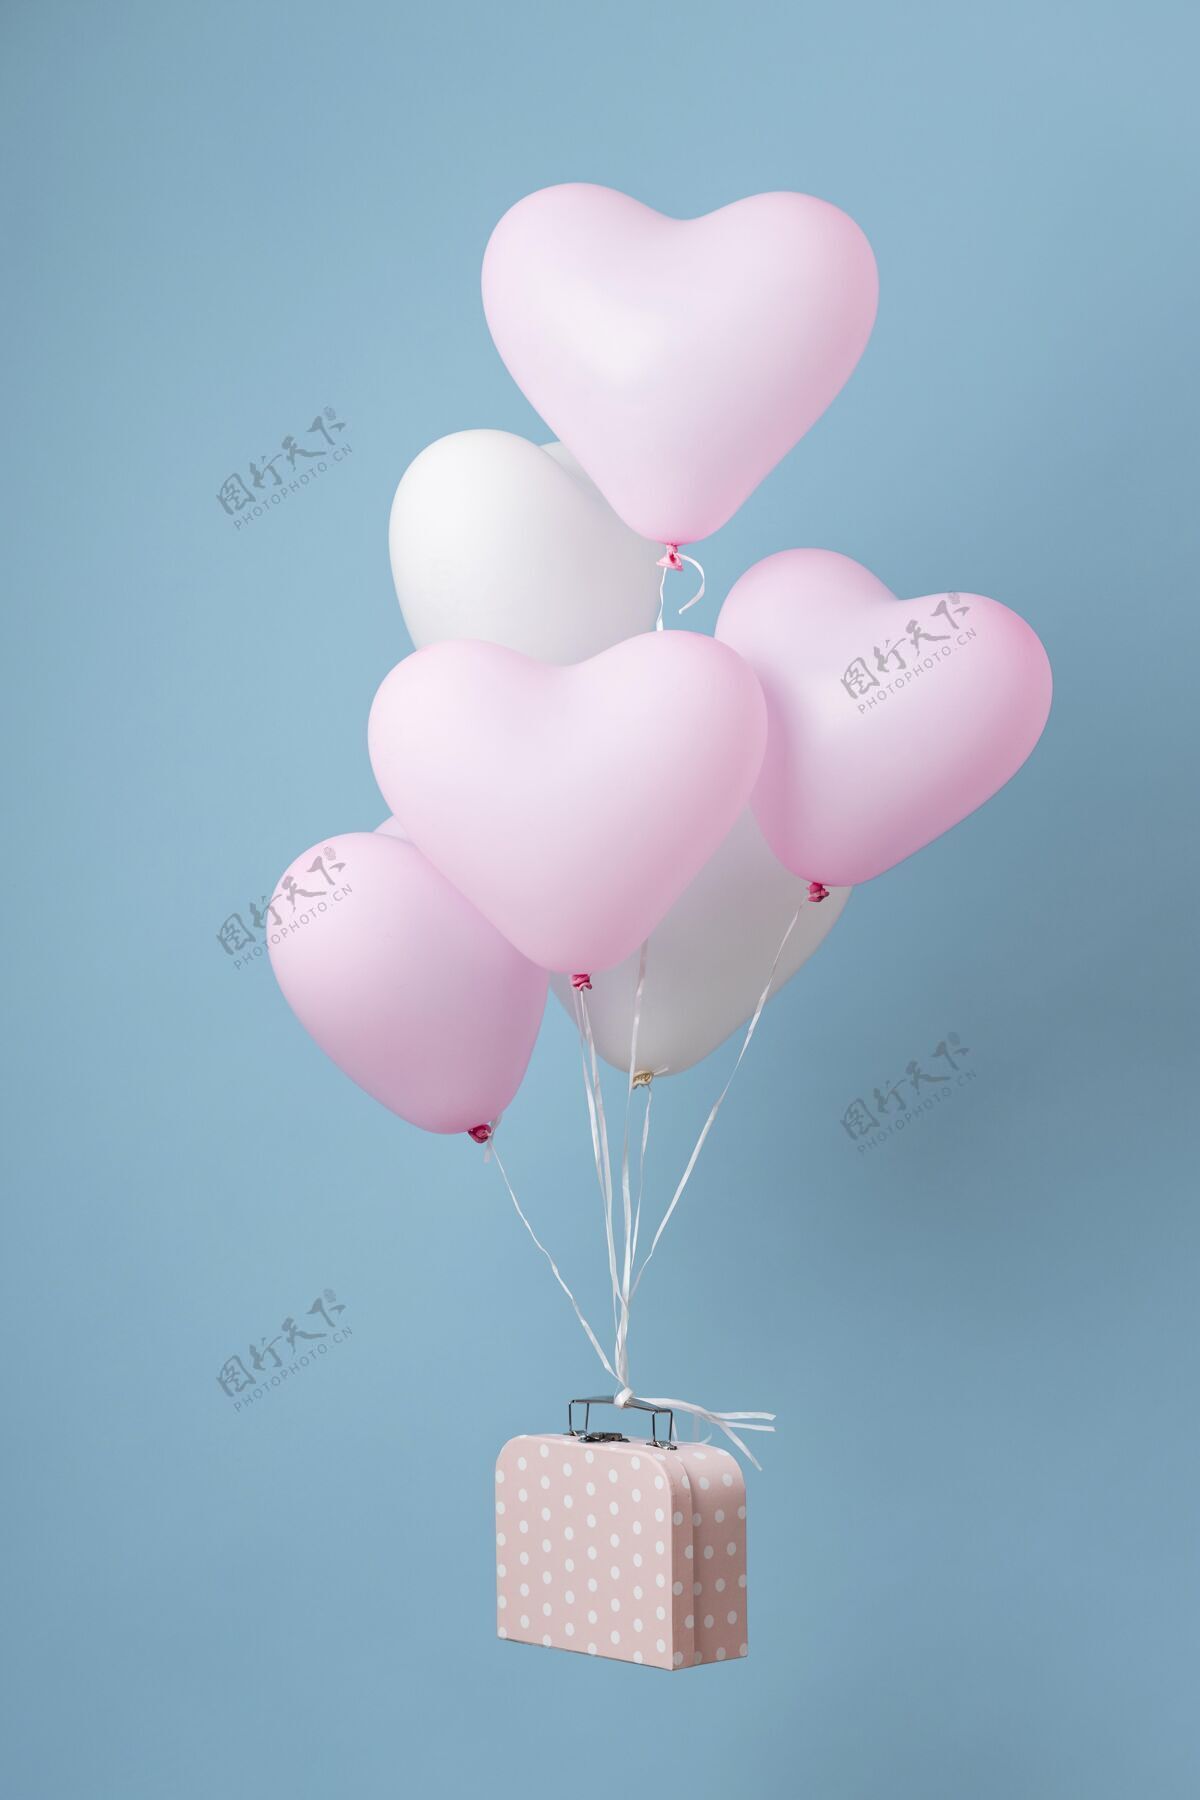 聚会盒子里有可爱的心气球静物组成分类